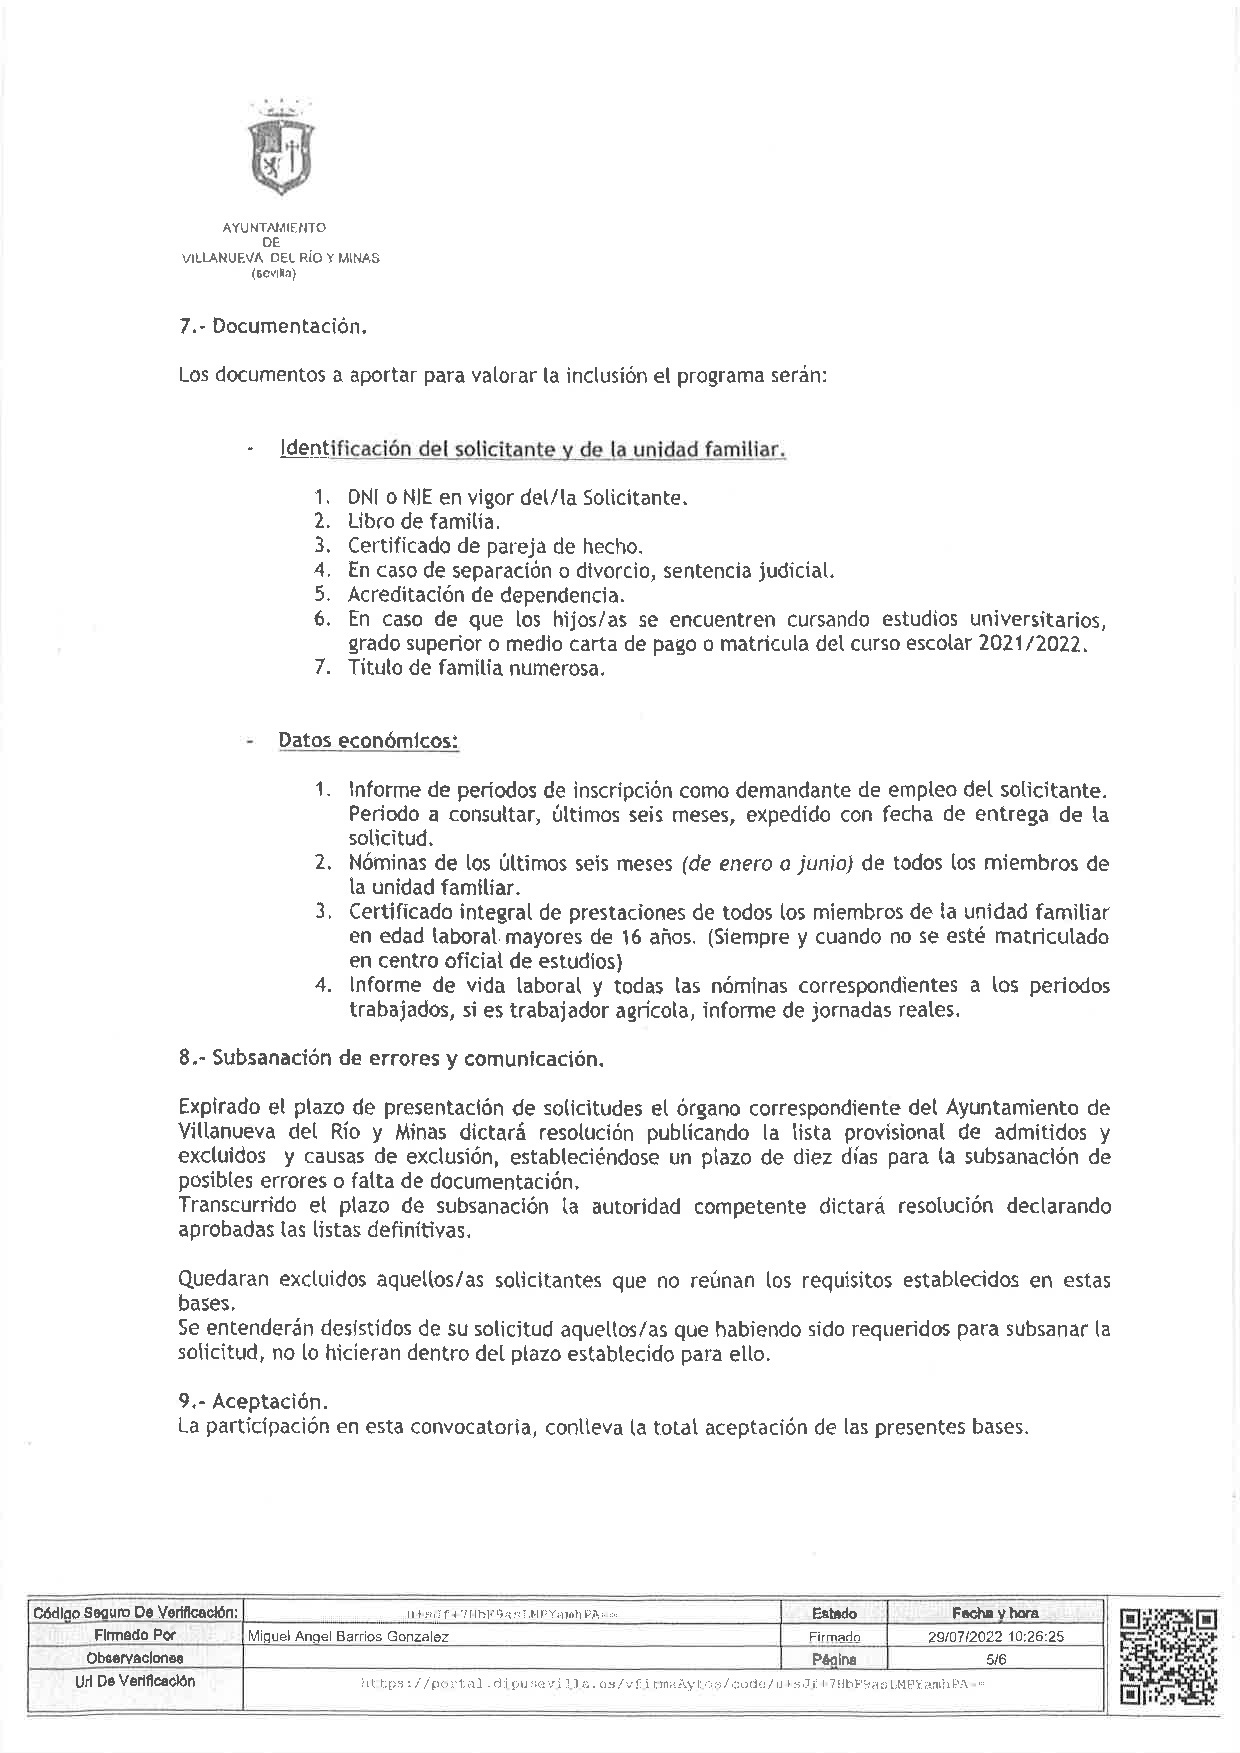 DECRETO DE ALCALDIA Nº 149. BASES PROGRAMA PREVENCION DE LA EXCLUSION SOCIAL, DEL PLAN ACTUA-005